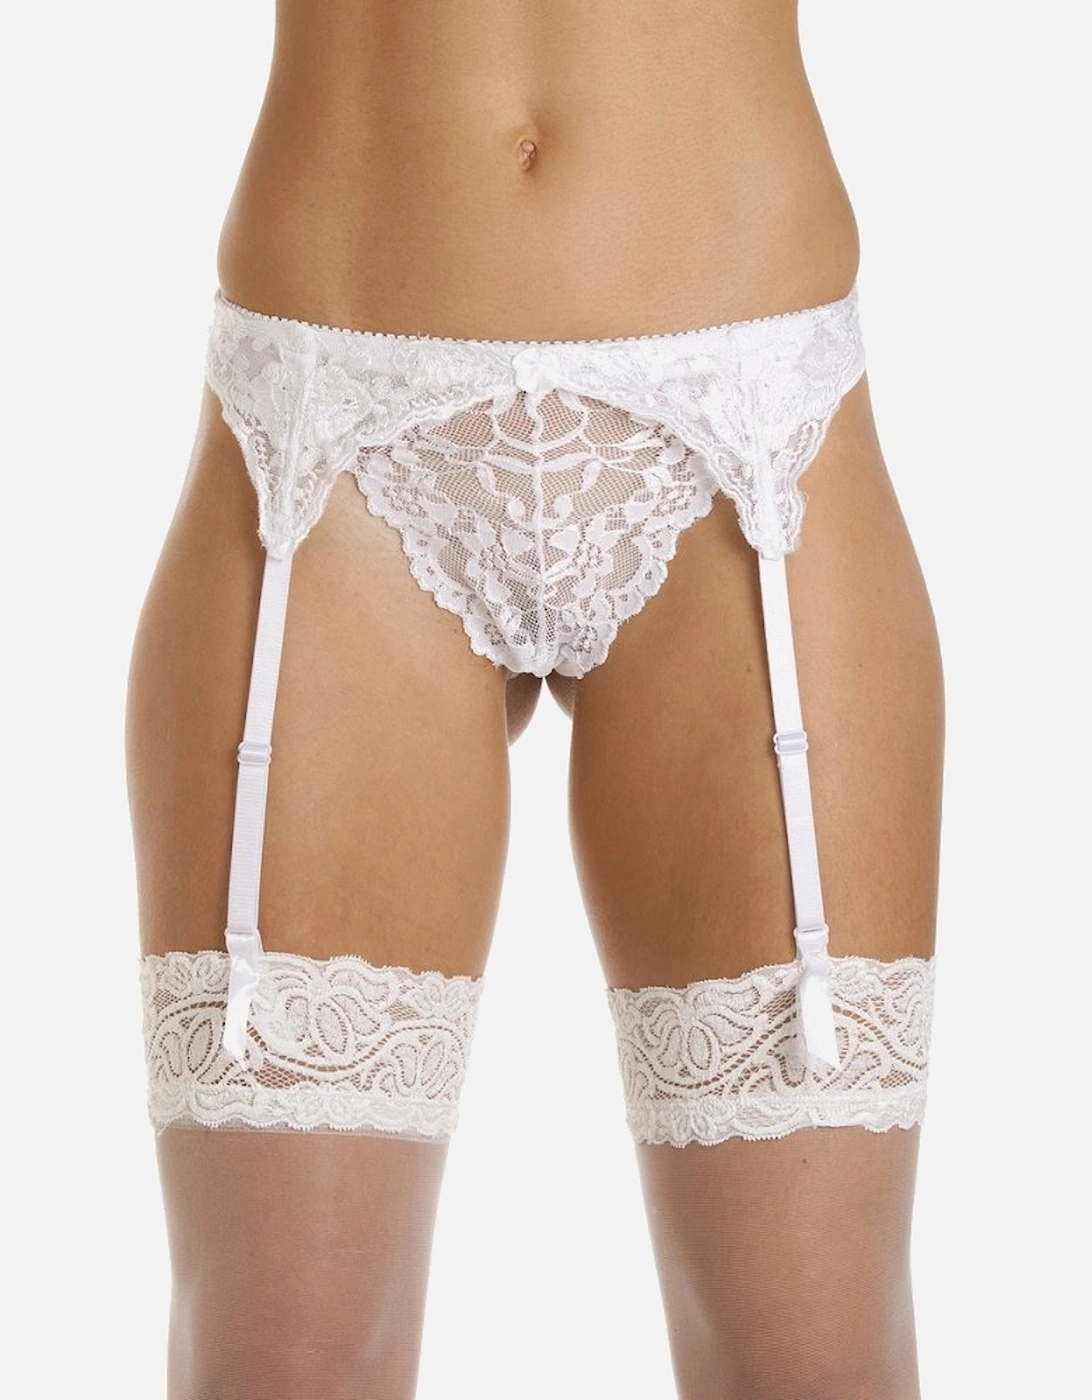 Camille Women's Suspender Belt in White Narrow Lace Ladies Sexy Underwear, 6 of 5